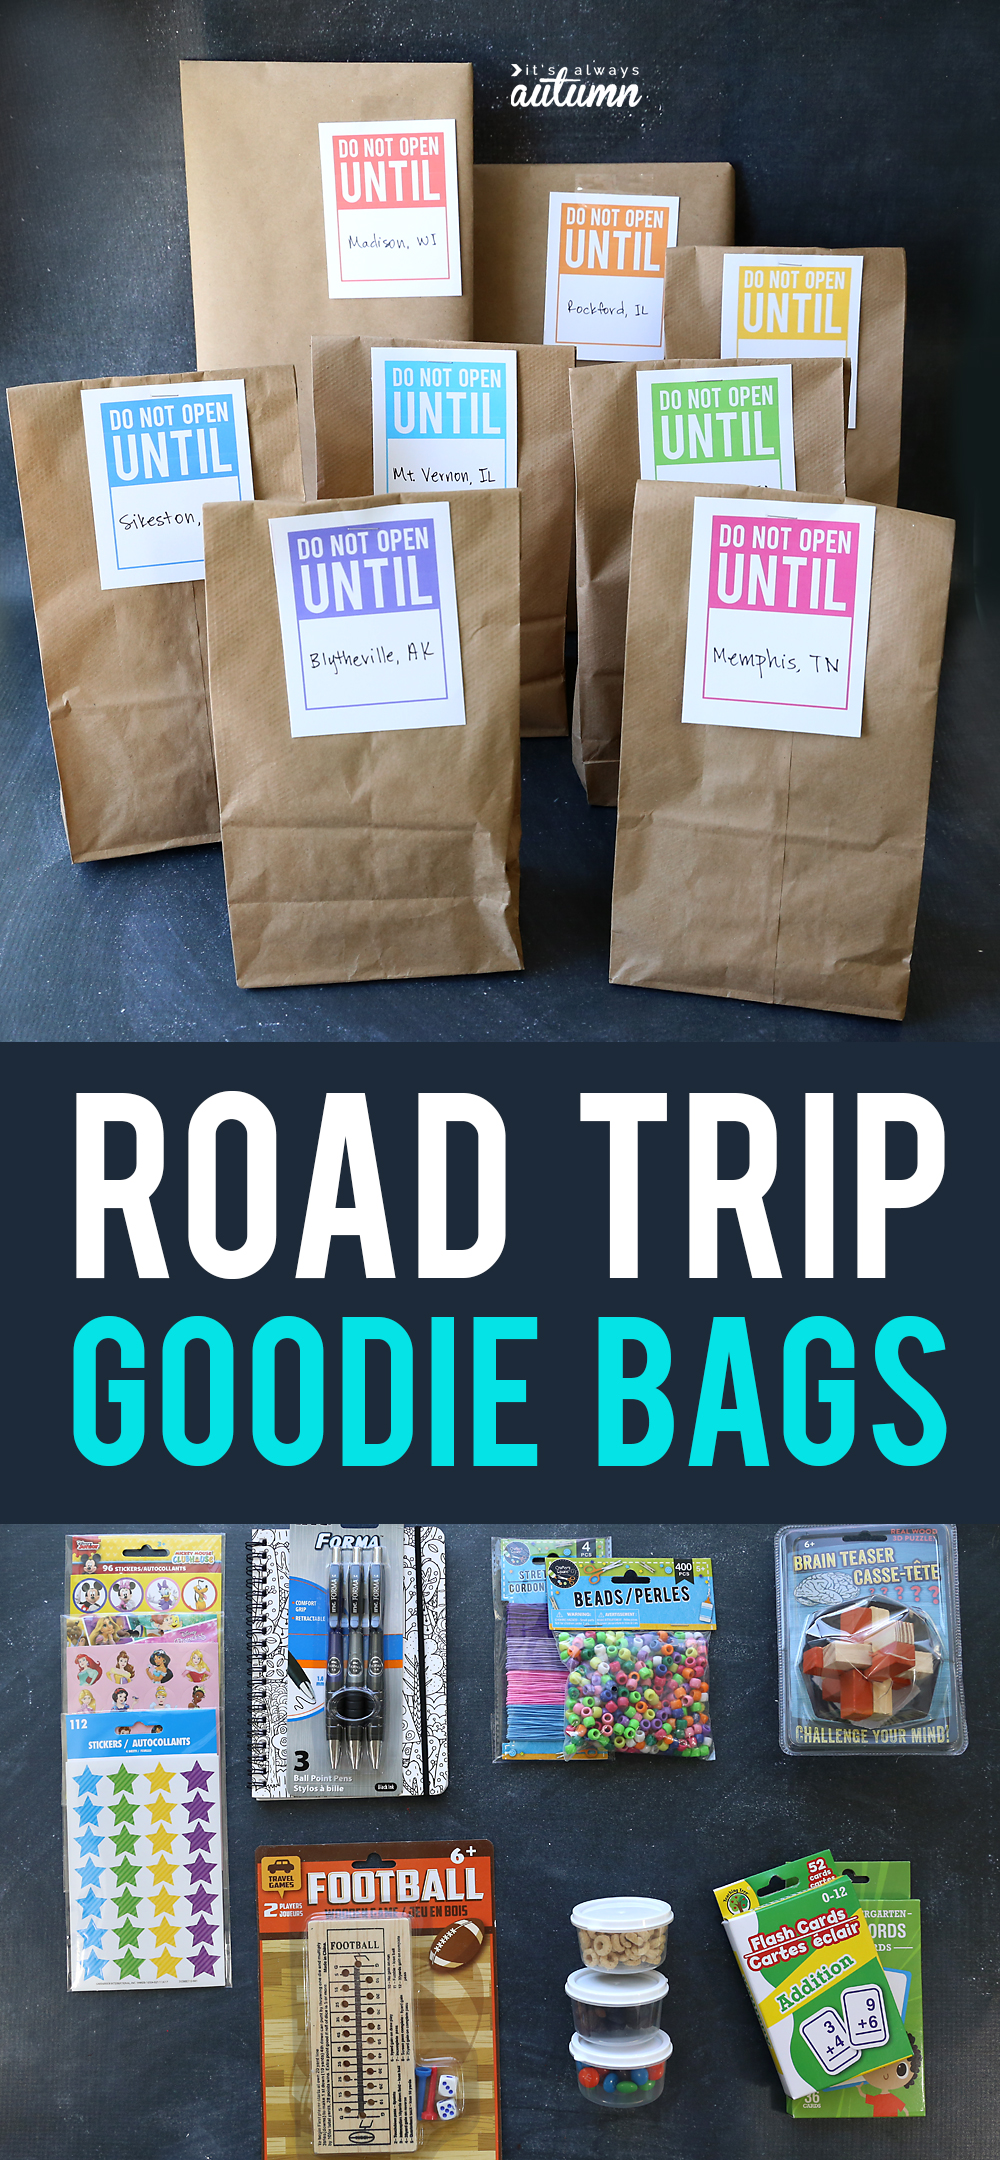 Road trip goodie bags